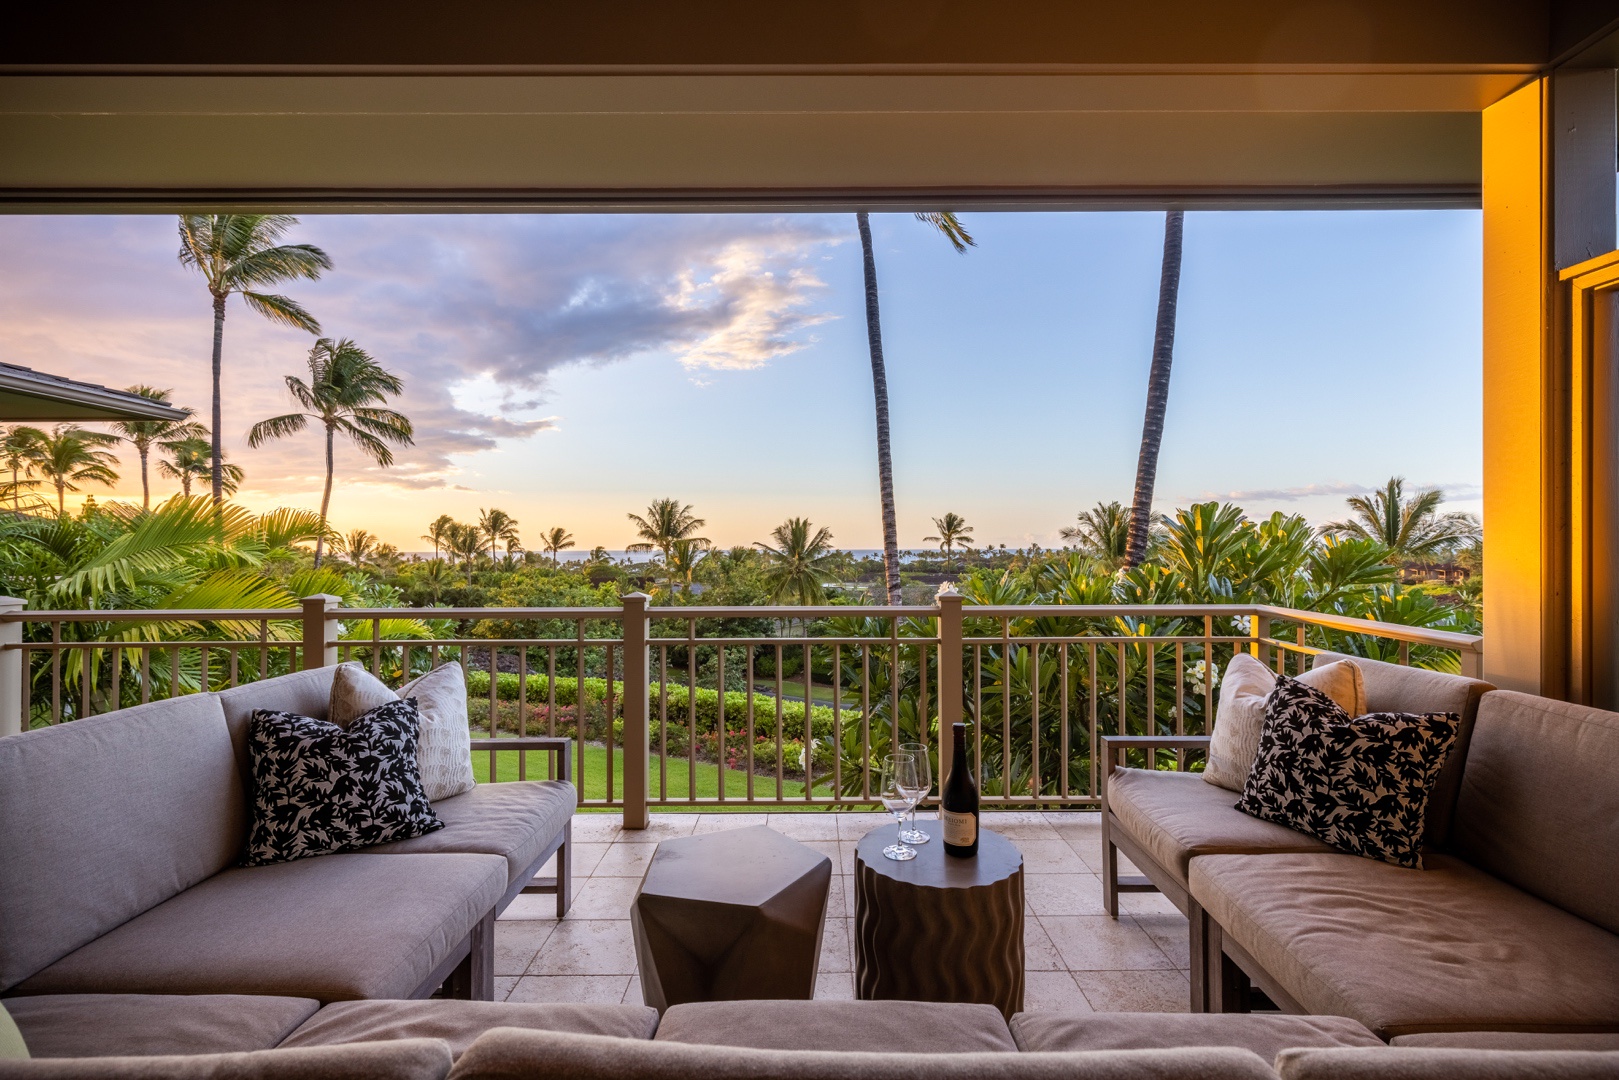 Kailua Kona Vacation Rentals, 3BD Ke Alaula Villa (210B) at Four Seasons Resort at Hualalai - Spacious upper lanai (deck) with sunset, fairway and ocean views.